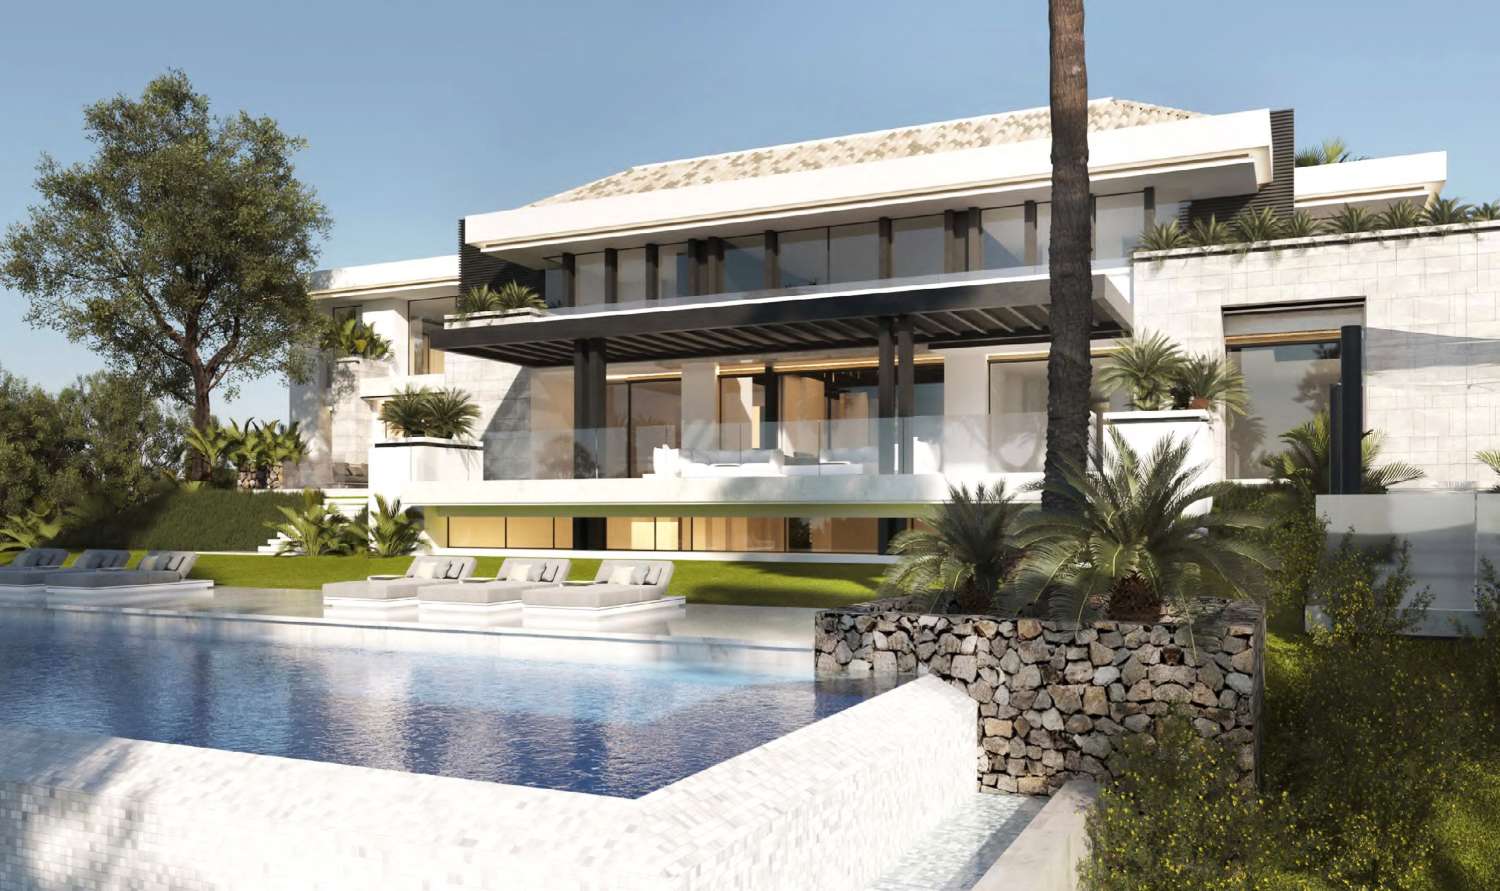 Te koop, luxe villa in La Zagaleta, met een adembenemend panoramisch uitzicht en een weelderige omgeving.